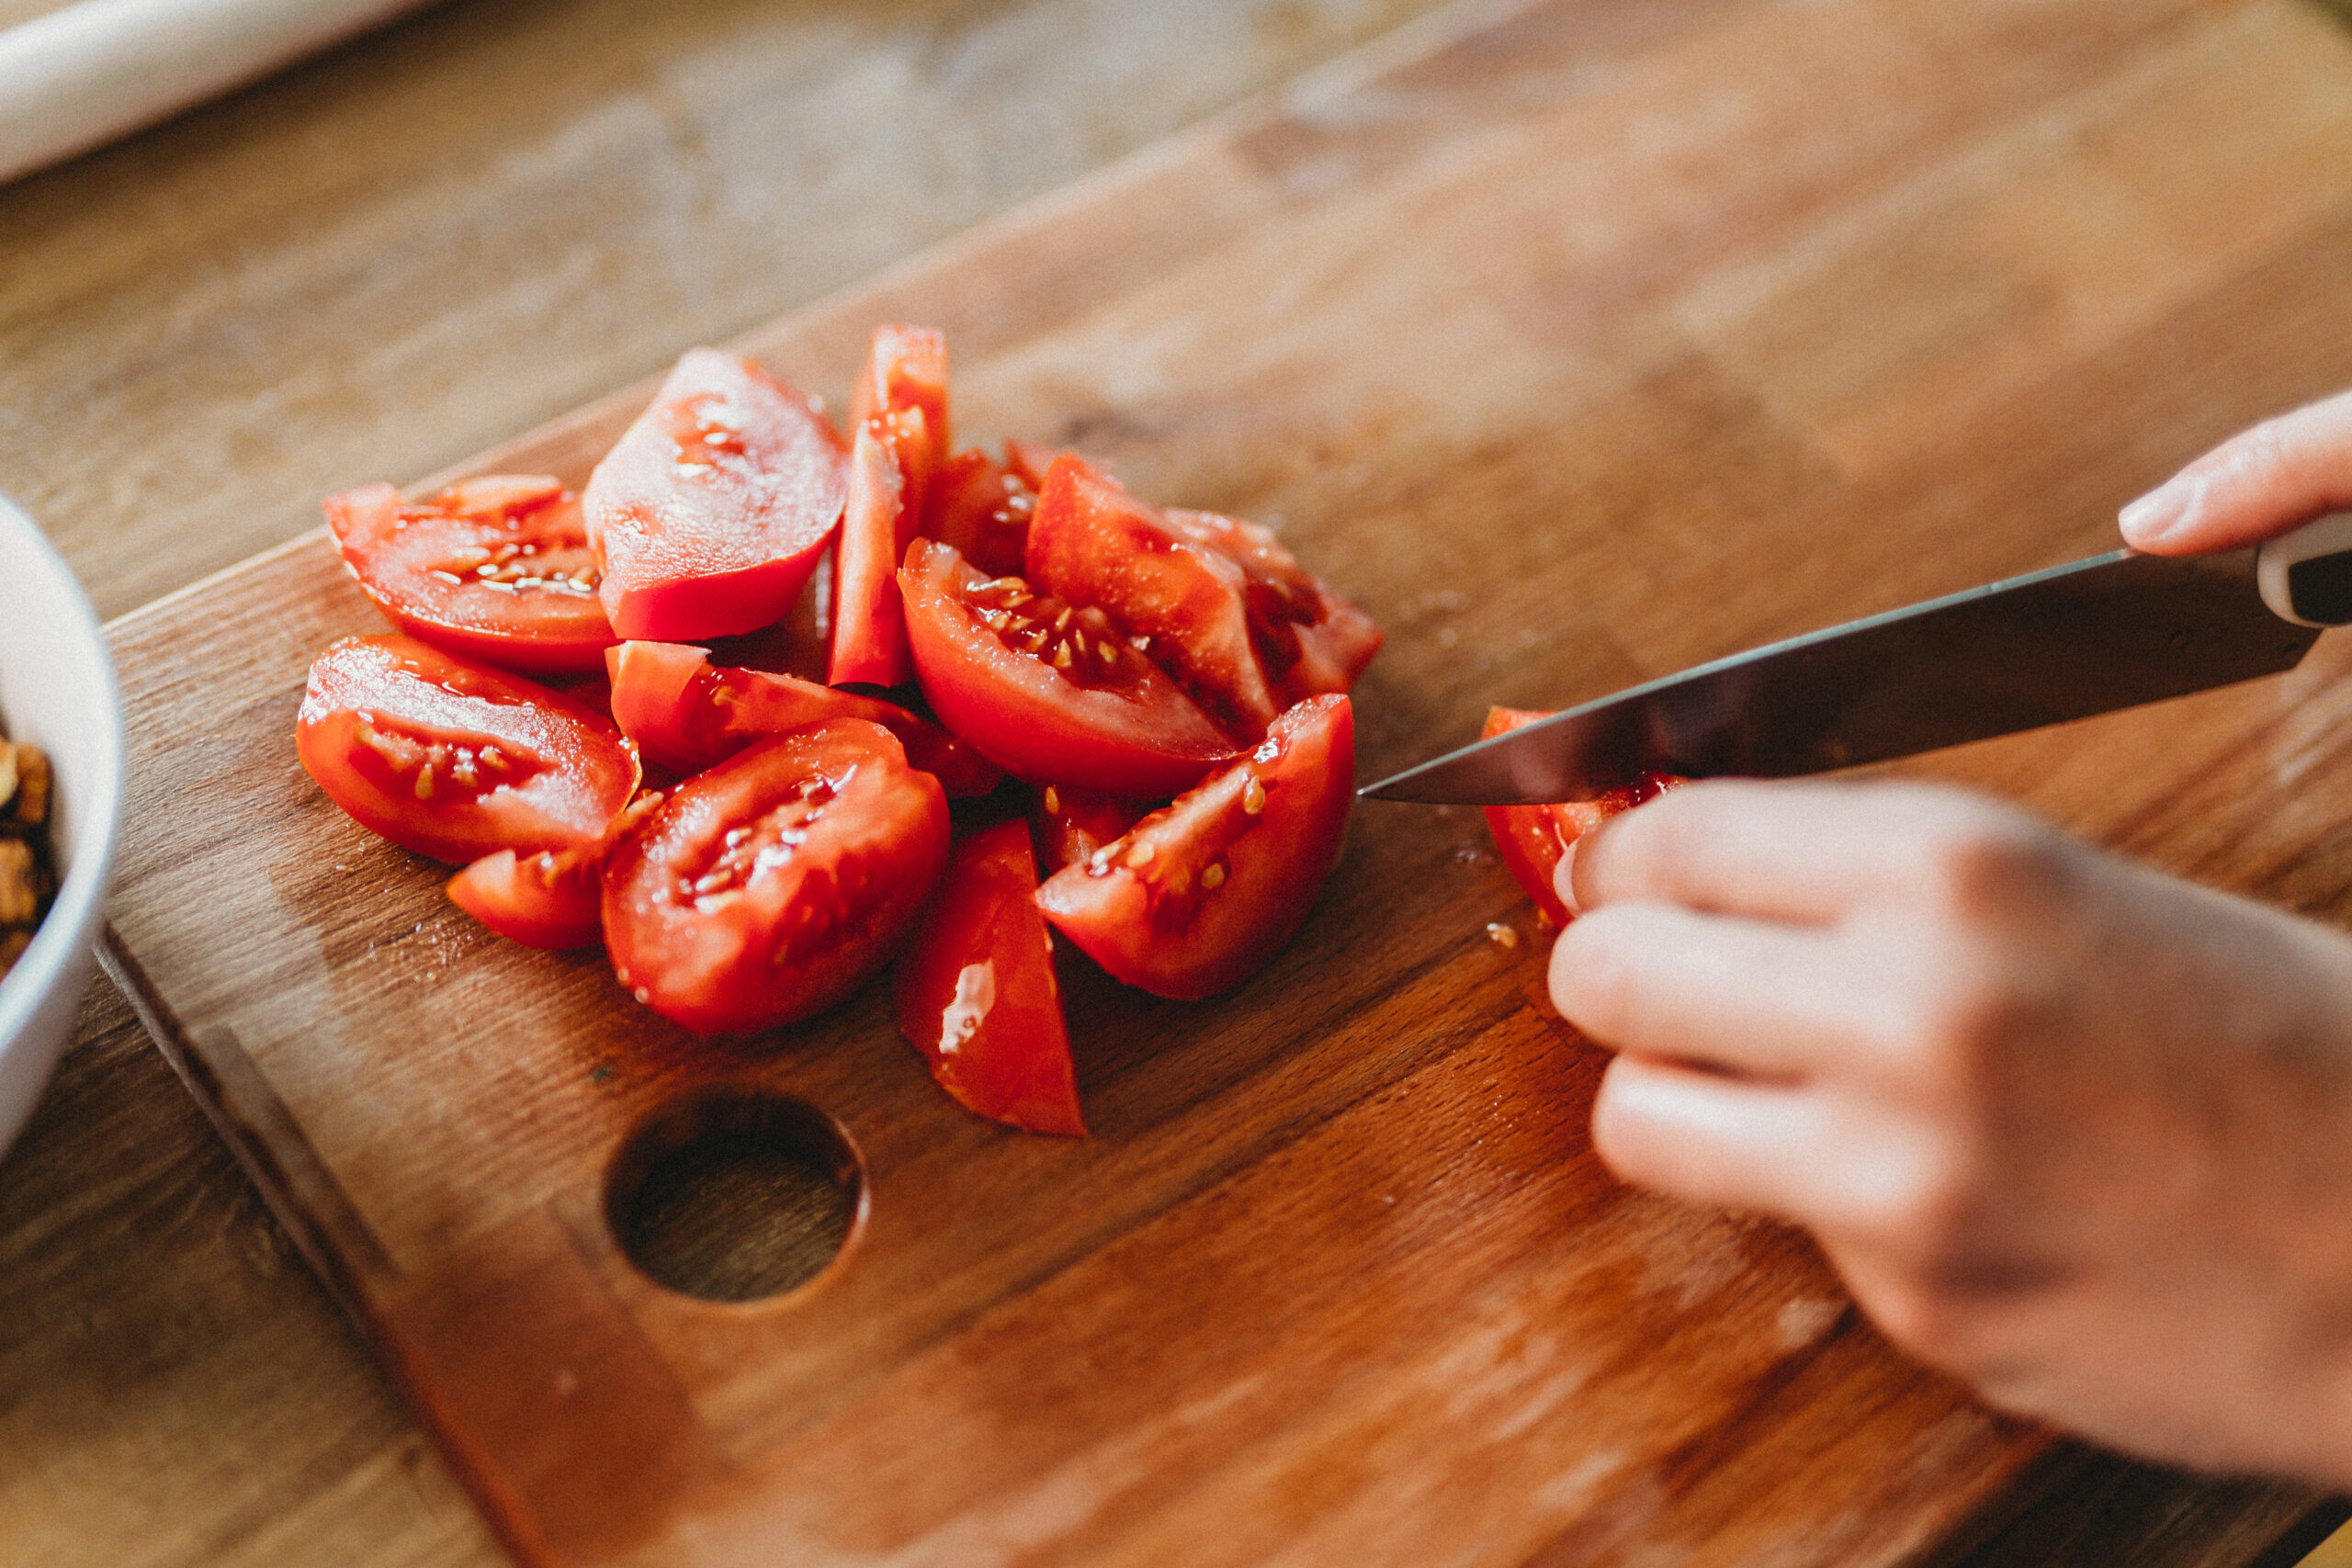 Tomaten sind reich an Lycopin, einem Antioxidans, das die Herzgesundheit unterstützen kann.